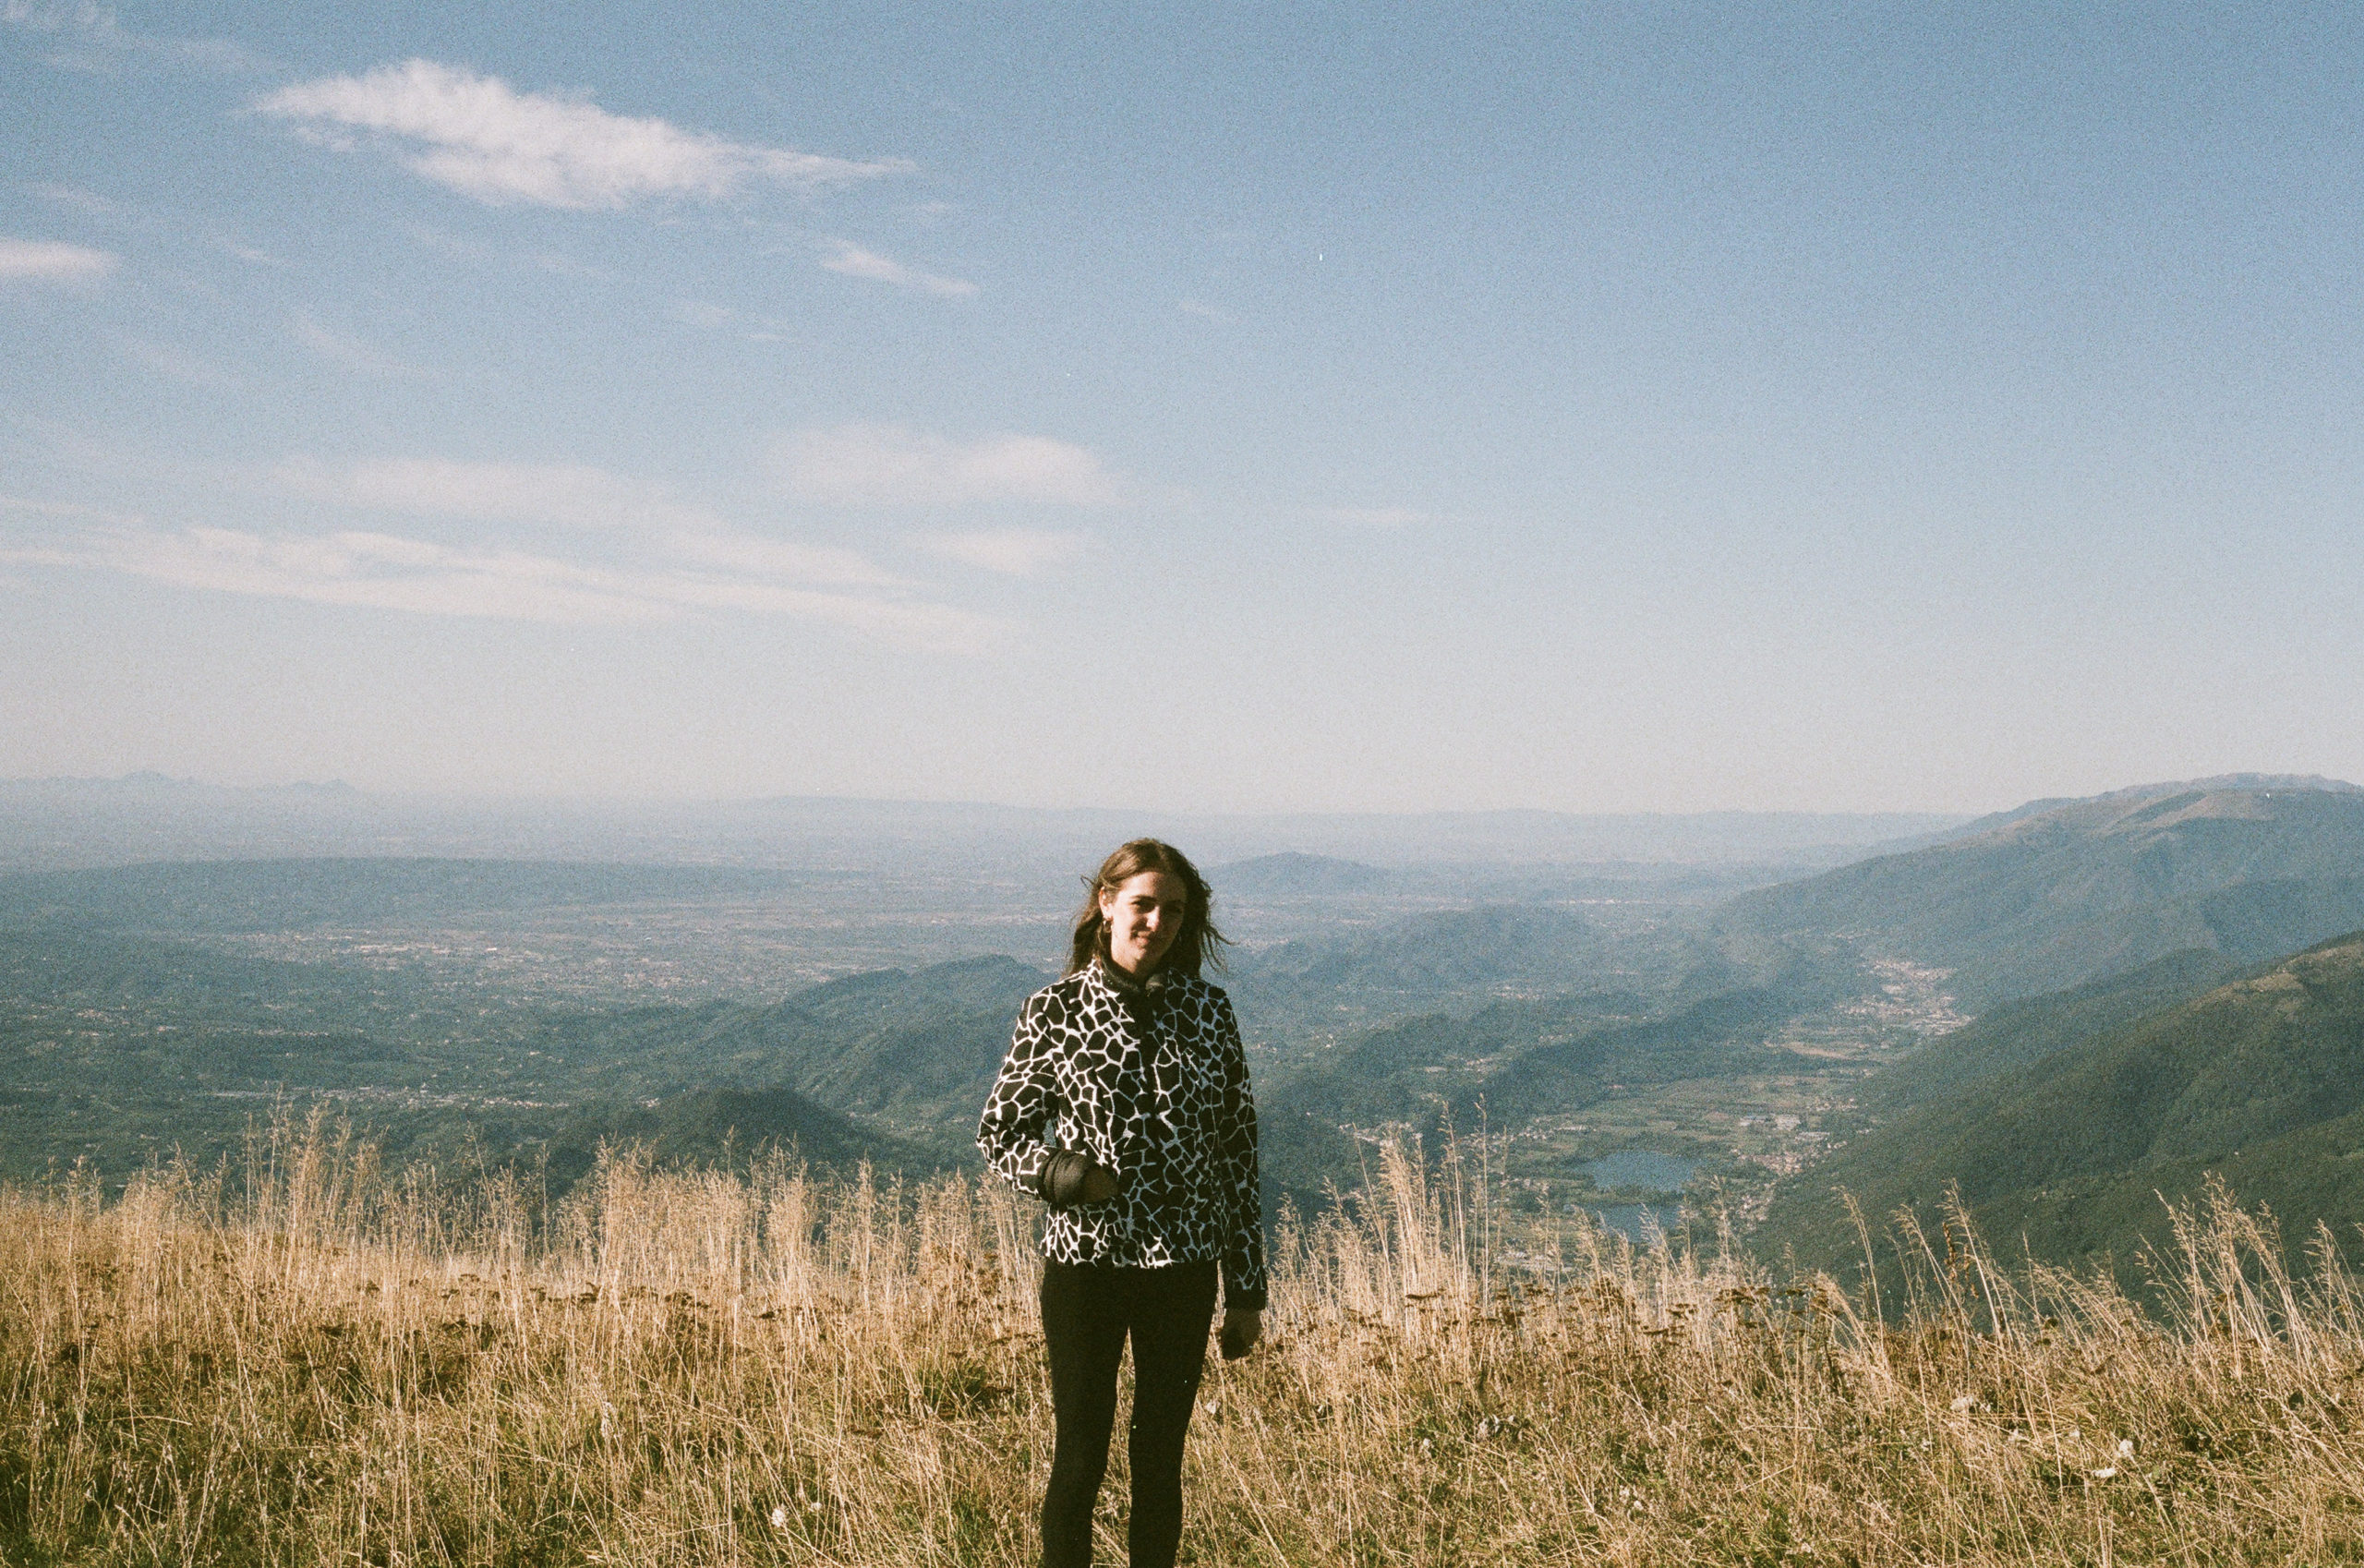 Laura sur le Monte Pizzoc, Fregona